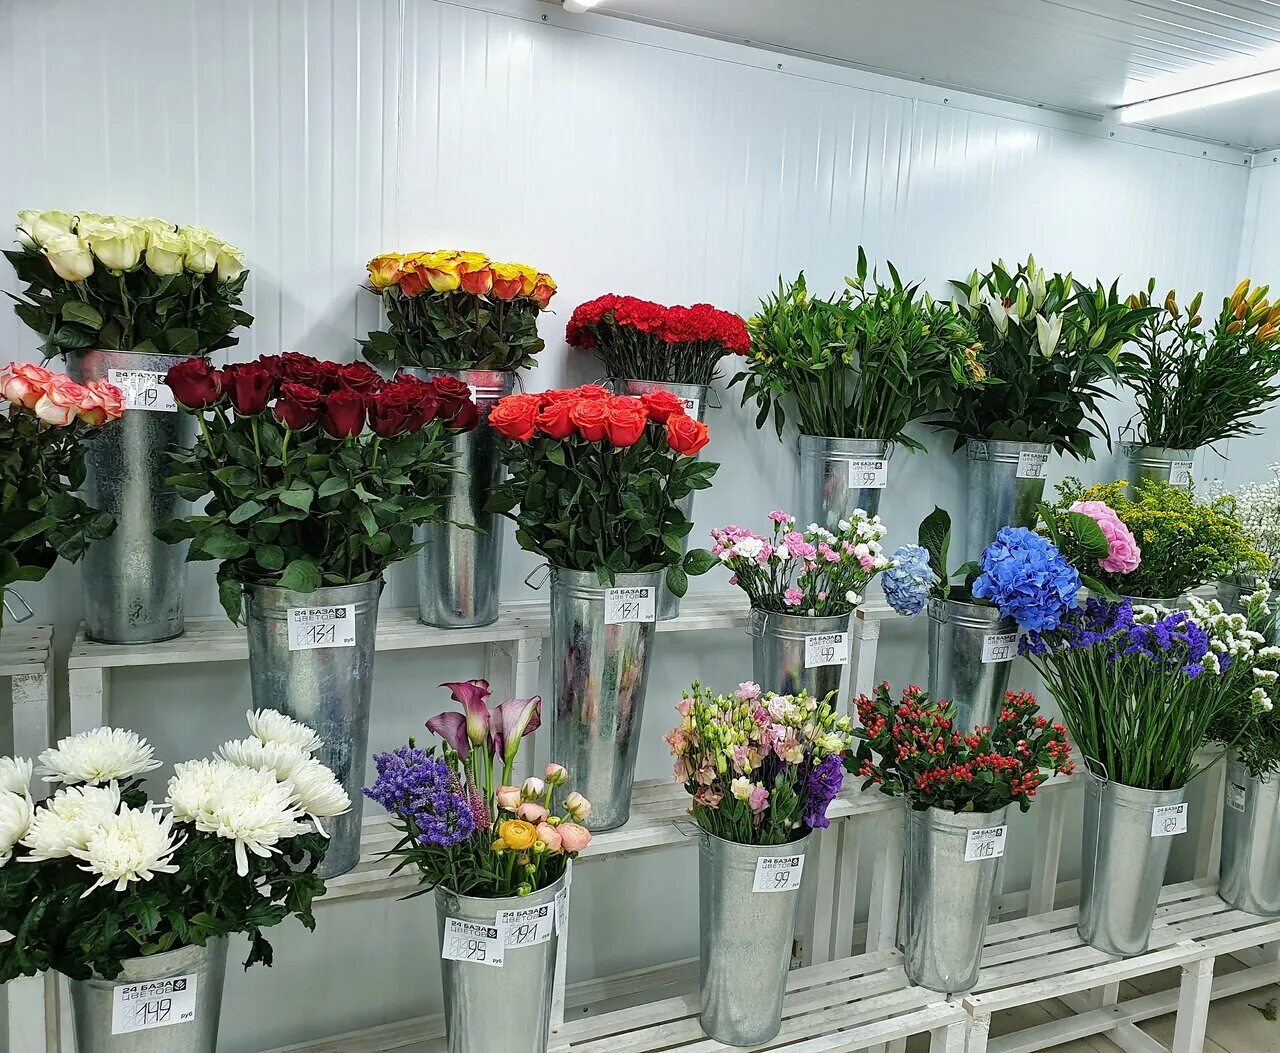 Сколько стоит купить цветочный магазин. Цветочный склад Оазис Балашиха. Цветы в магазине. Обычные цветы в цветочных магазинах. Цветочный магазин дешевый.